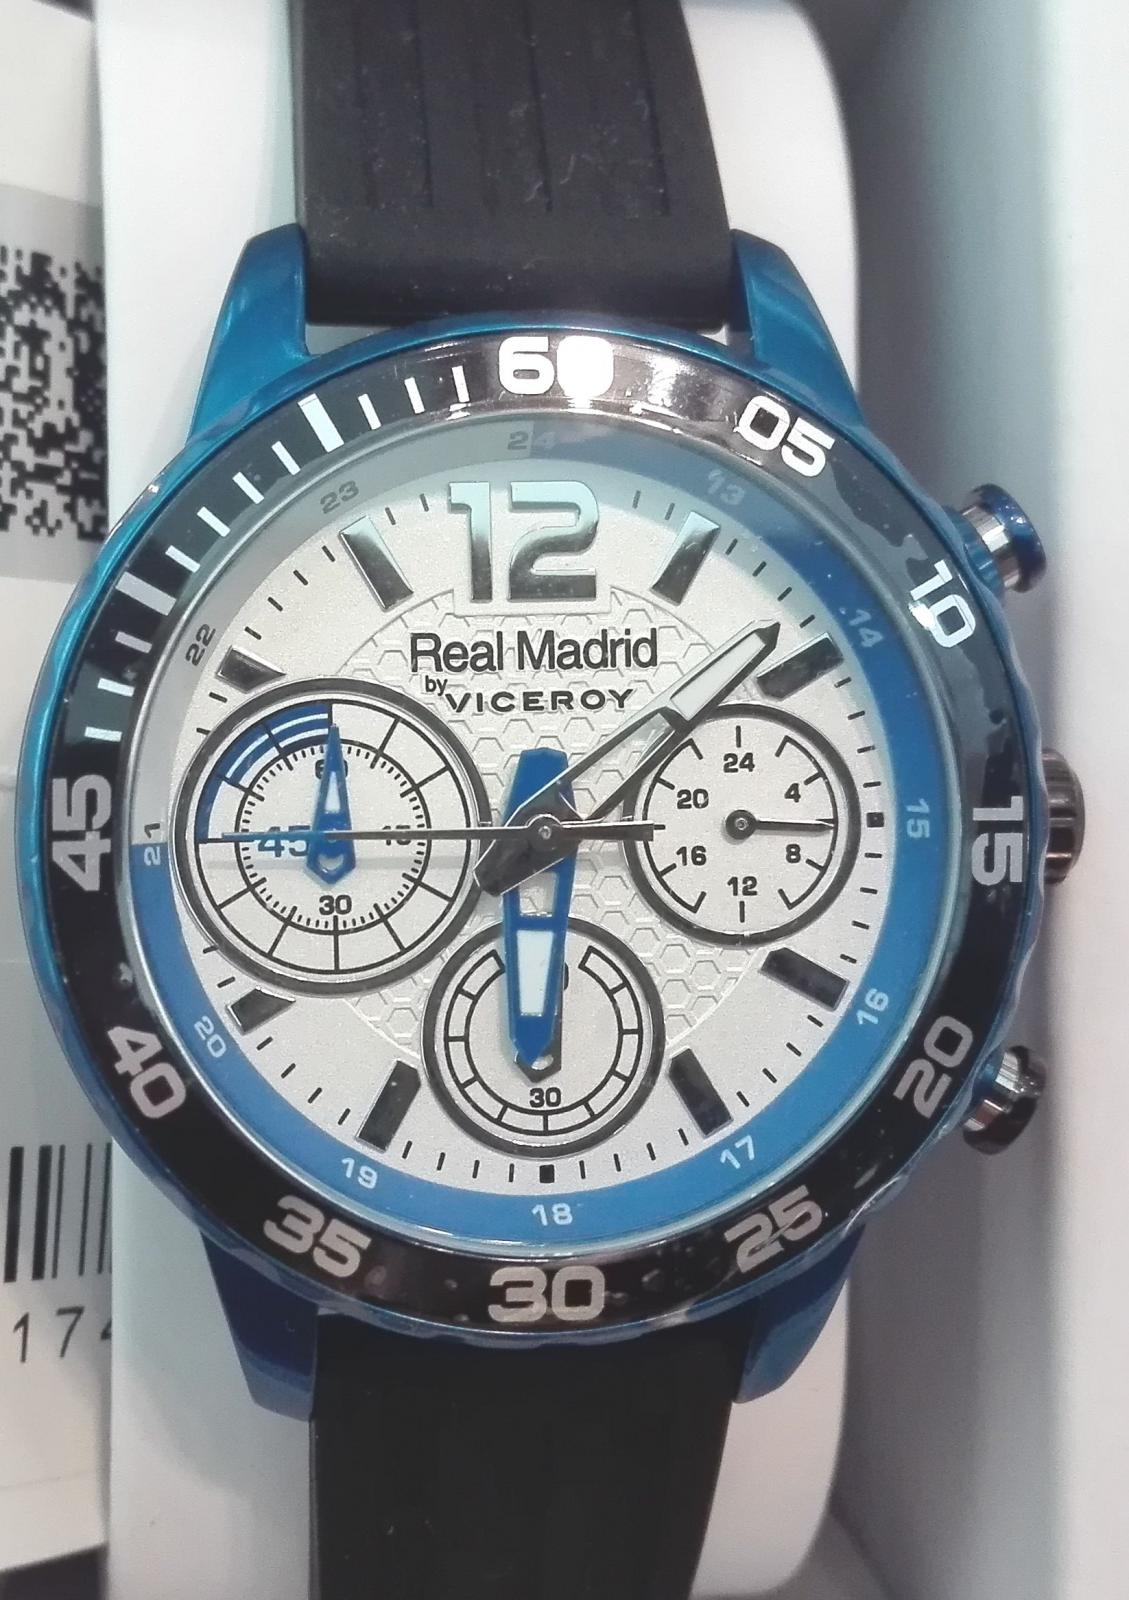 Reloj Viceroy Real Madrid 40962-05 Multifunción ¡Vamos!